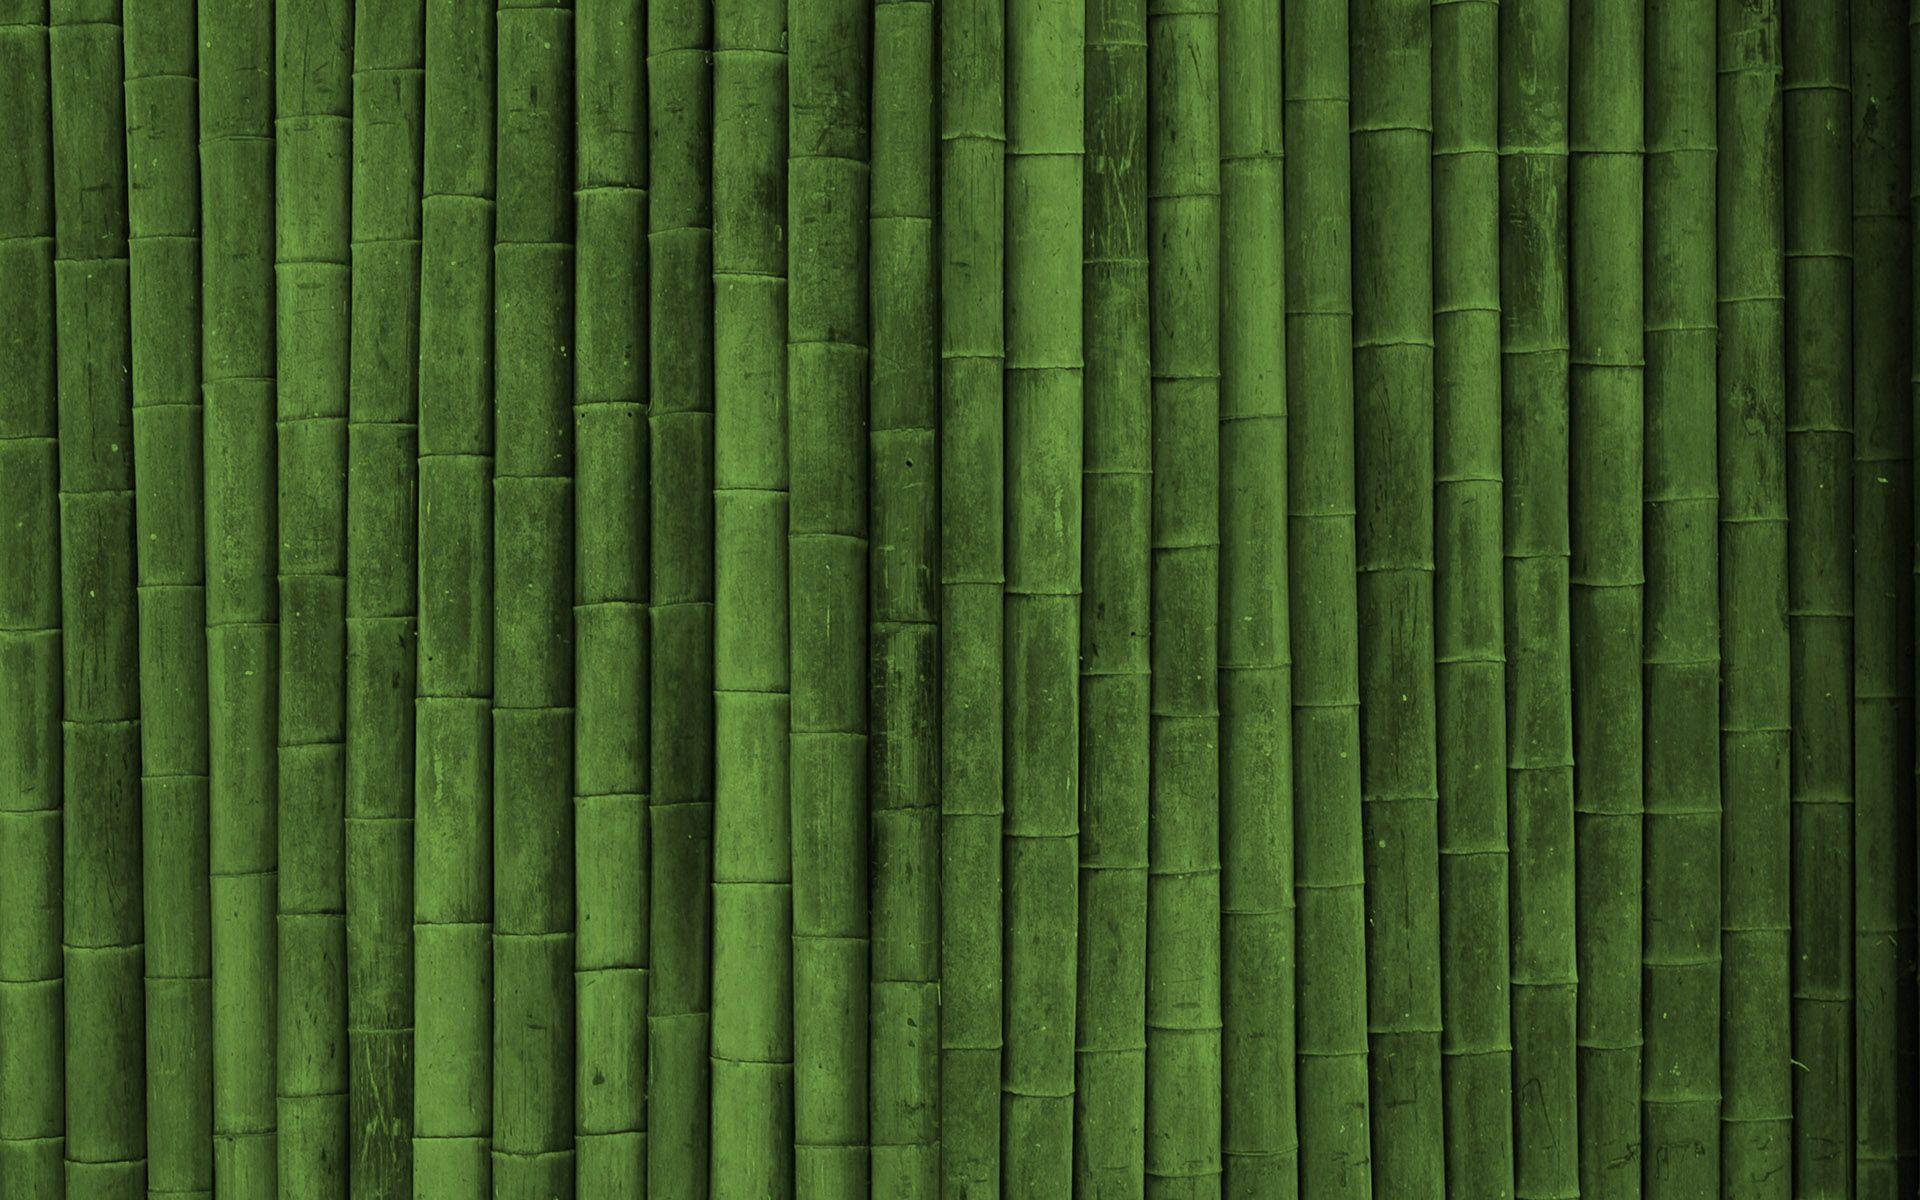 Green Bamboo HD Wallpaper. ForestHDWallpaper